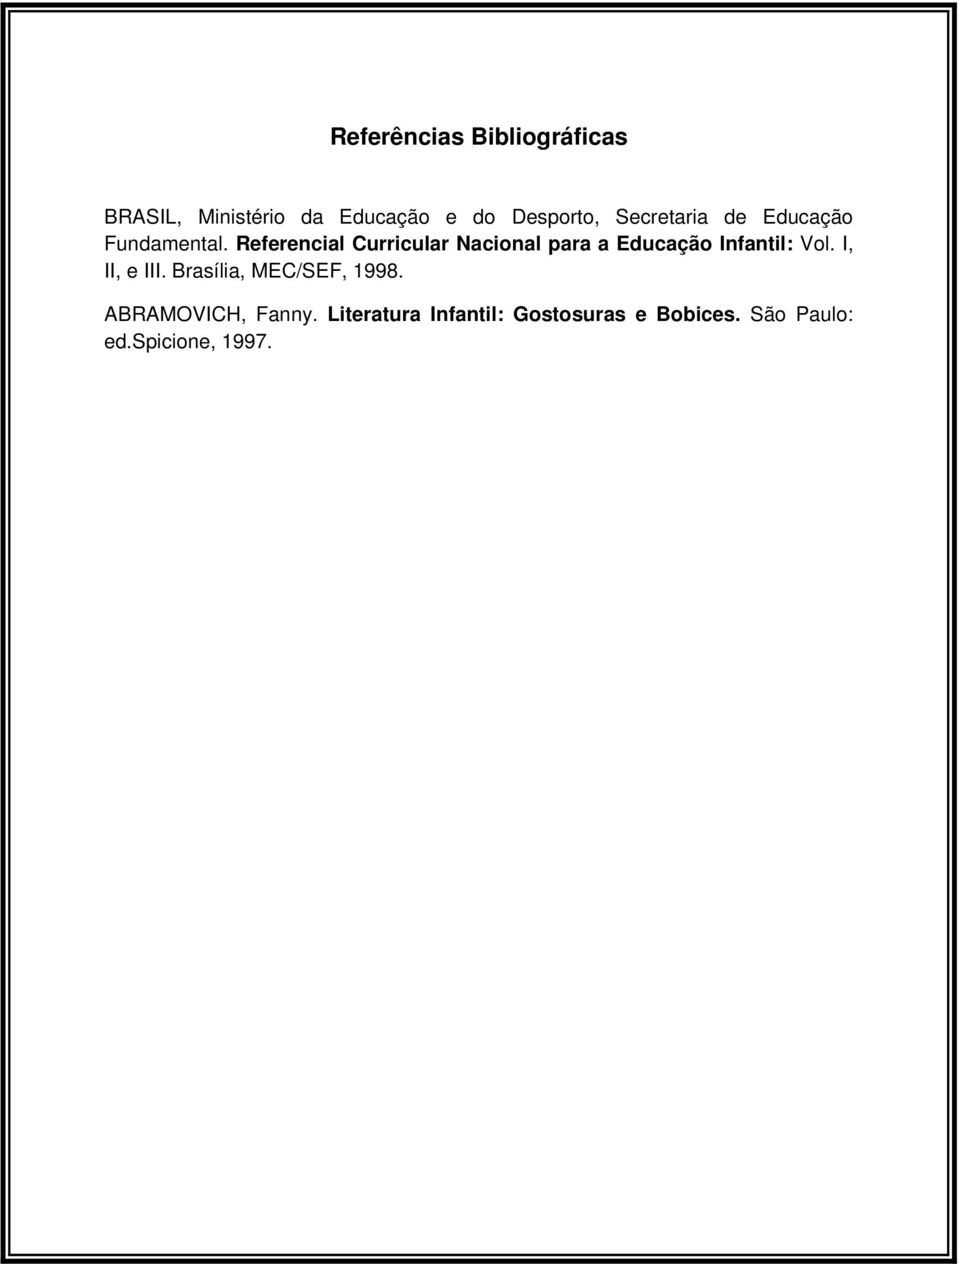 Referencial Curricular Nacional para a Educação Infantil: Vol. I, II, e III.